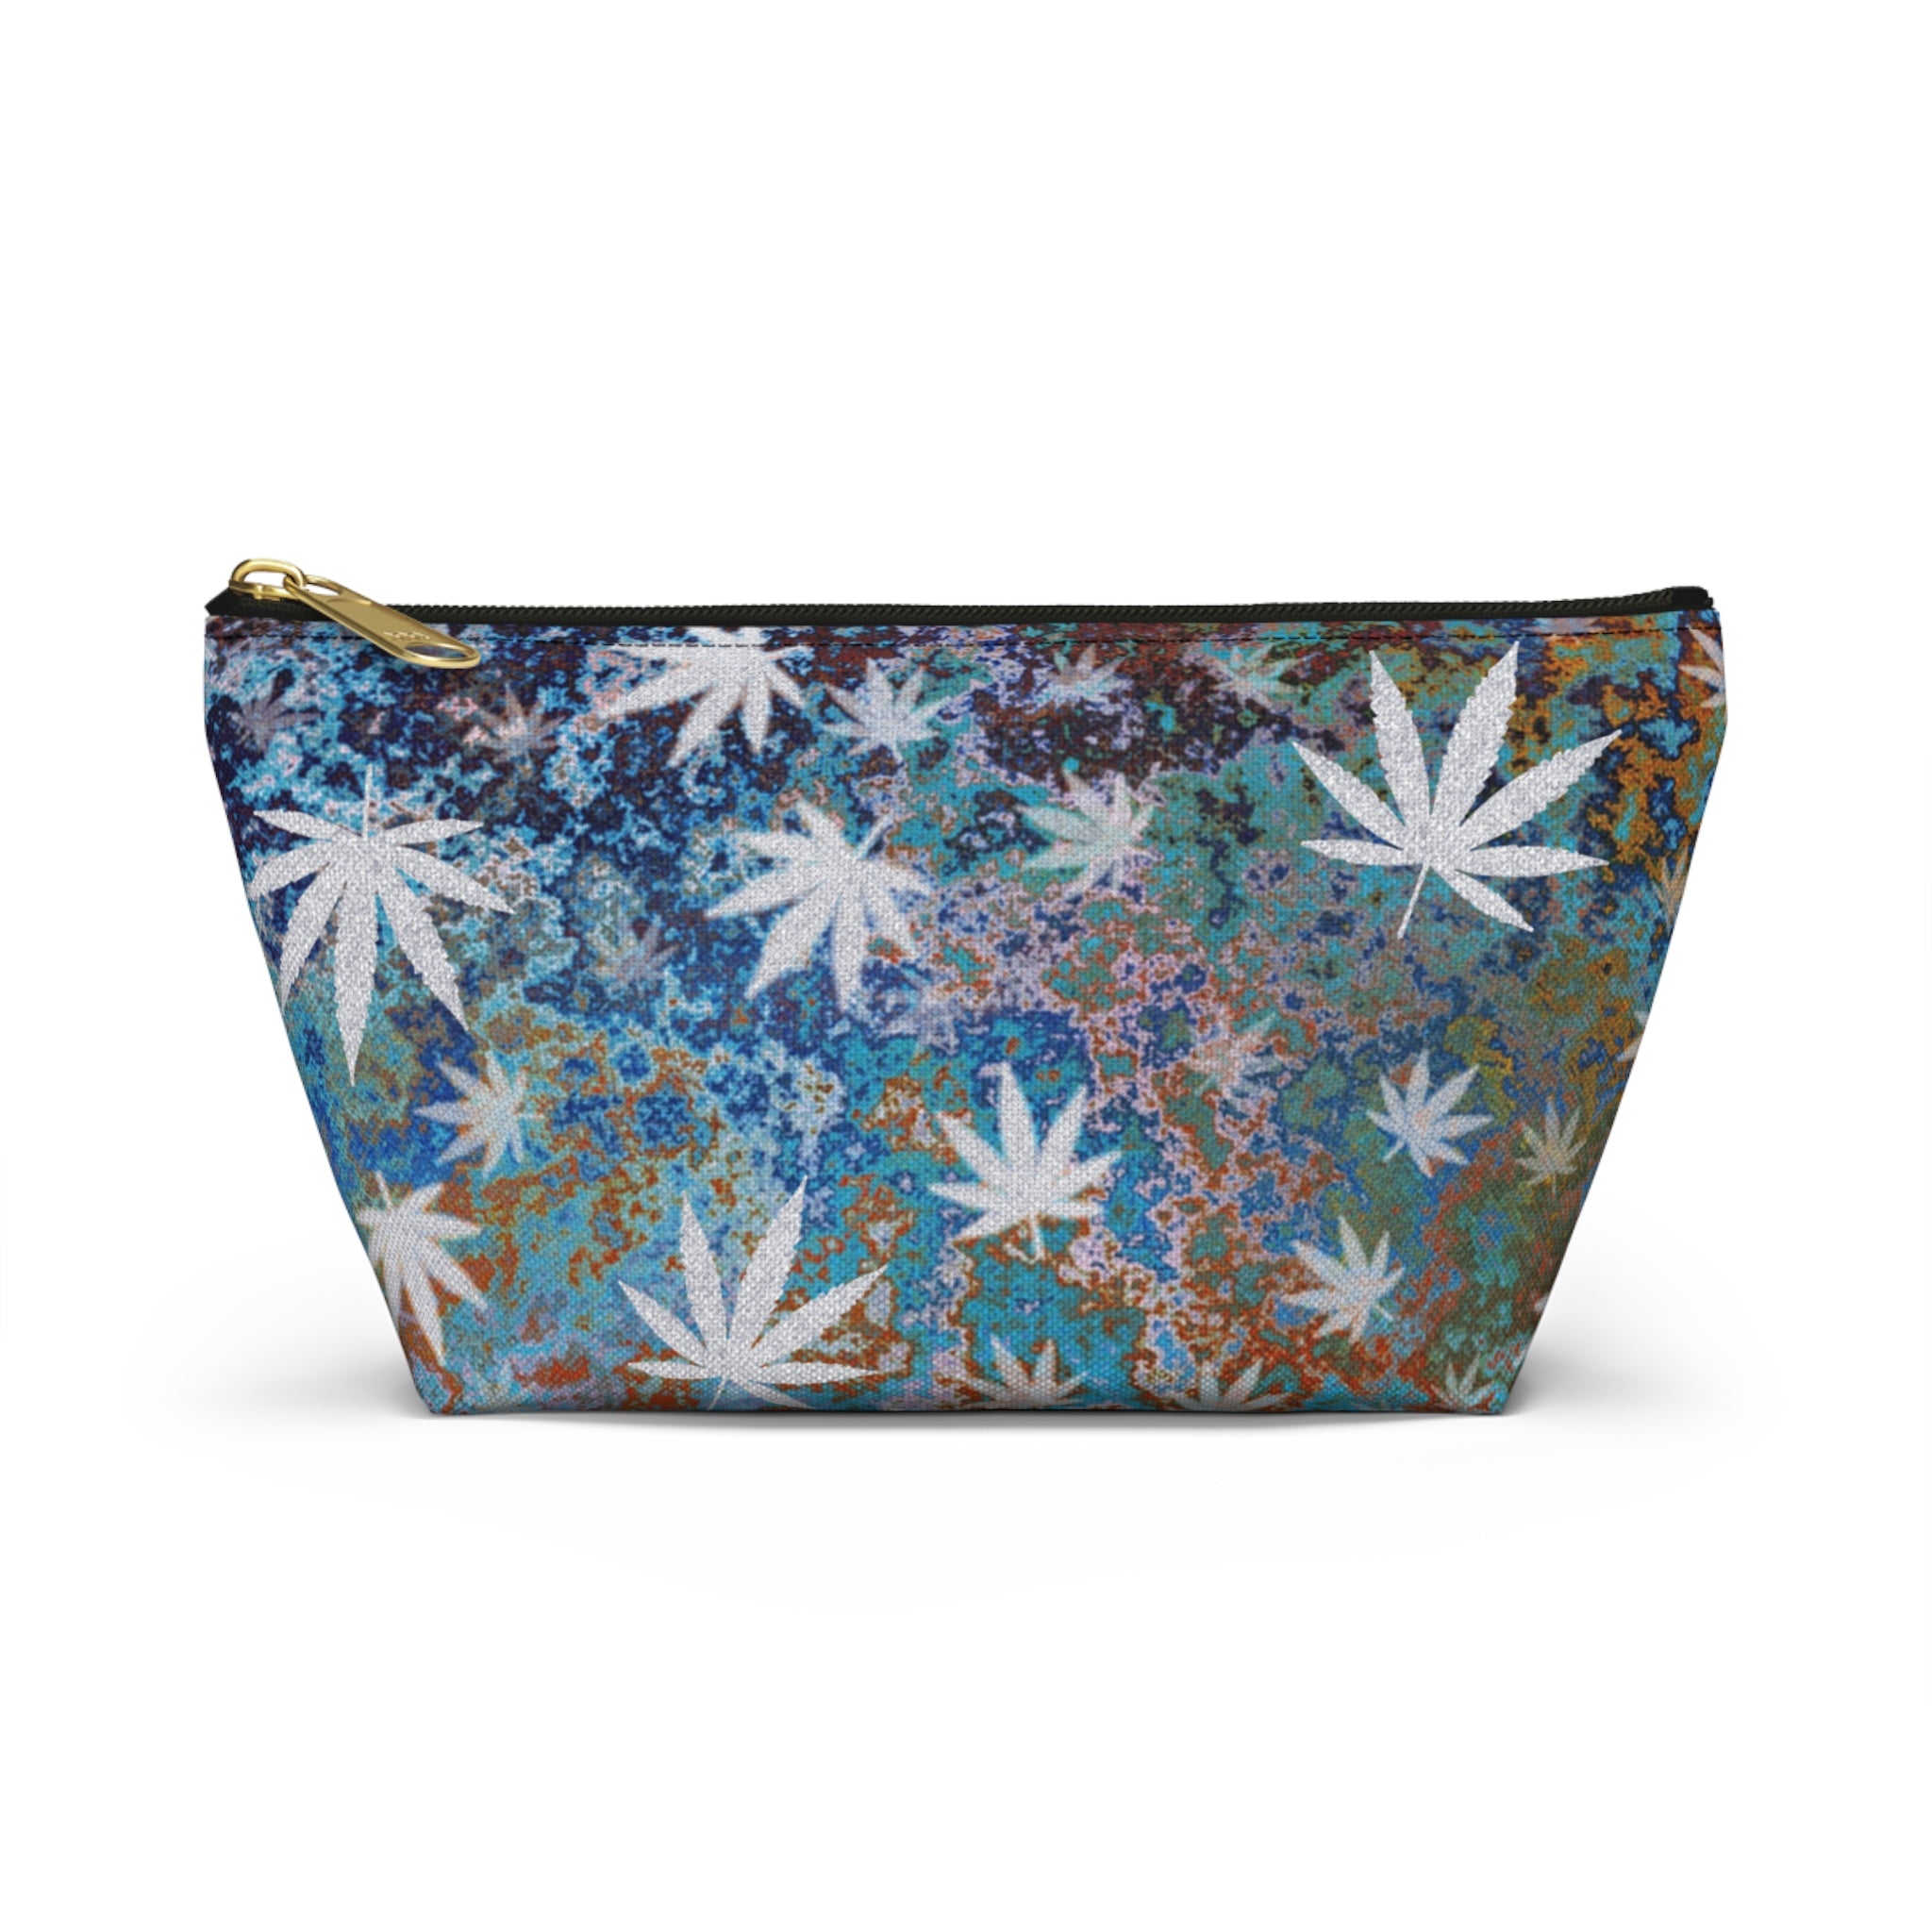 Acid Wash Look Cannabis Themed Stash Bag Accessory Bag Travel Bag Makeup Bag Stoner Gift